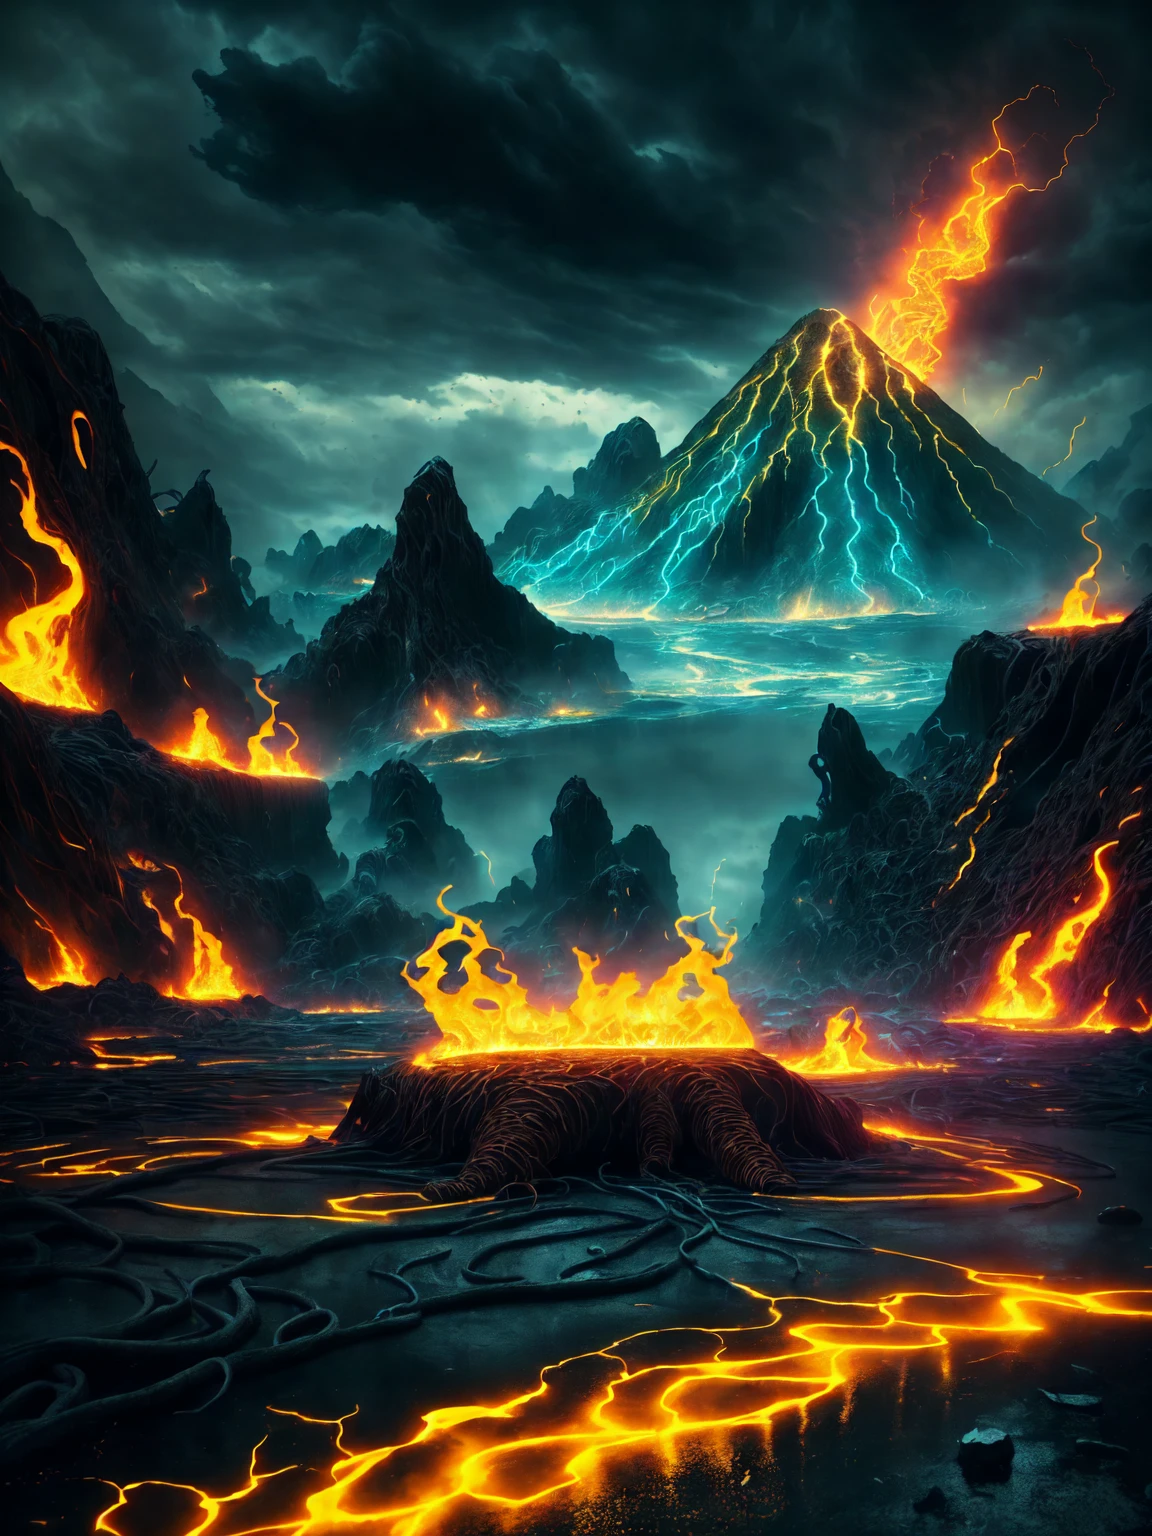 (alta qualidade:1.2),criatura demoníaca emergindo de um vulcão, uma imagem inspiradora, destruição, apocalíptico, HD 4K,8K, Obra de arte, ultra-detalhado, hiper-realista, lava derretendo tudo, calor intenso, brasas brilhantes, atmosfera sombria e sinistra, Fumaça preta esvoaçante, rochas derretidas voando no ar, explosões de fogo, Edifícios em ruínas, paisagem devastada, surreal e aterrorizante, cores vibrantes e vivas, iluminação dramática, faíscas e chamas dançando ao redor da criatura, o chão rachando e rachando, caos e desespero, a haunting Obra de arte in high definition.